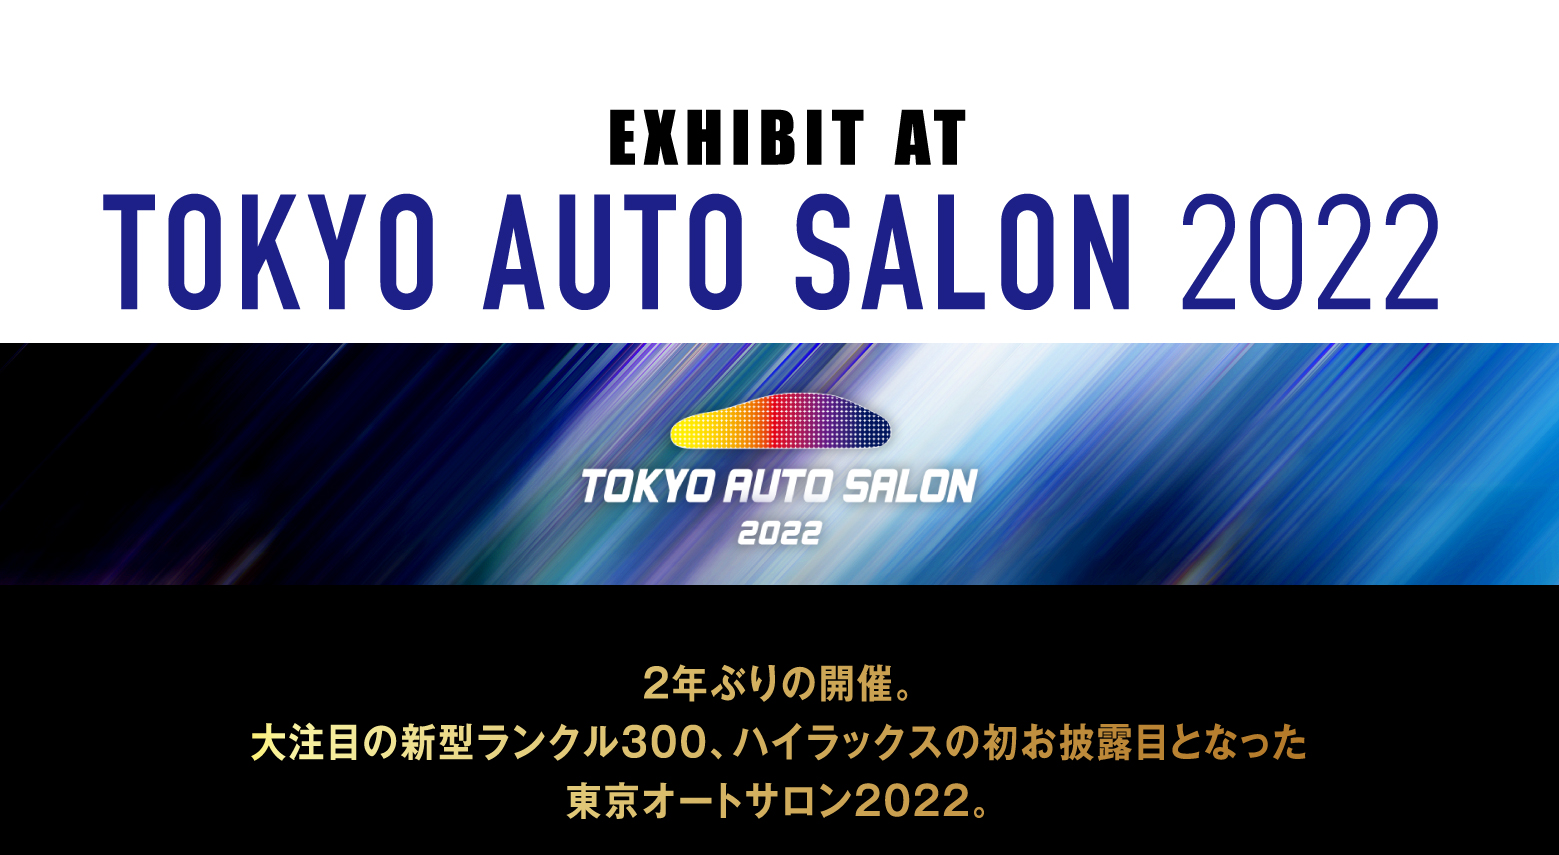 EXHIBIT AT TOKYO AUTO SALON 2022 2年ぶりの開催。大注目の新型ランクル300、ハイラックスの初お披露目となった東京オートサロン2022。